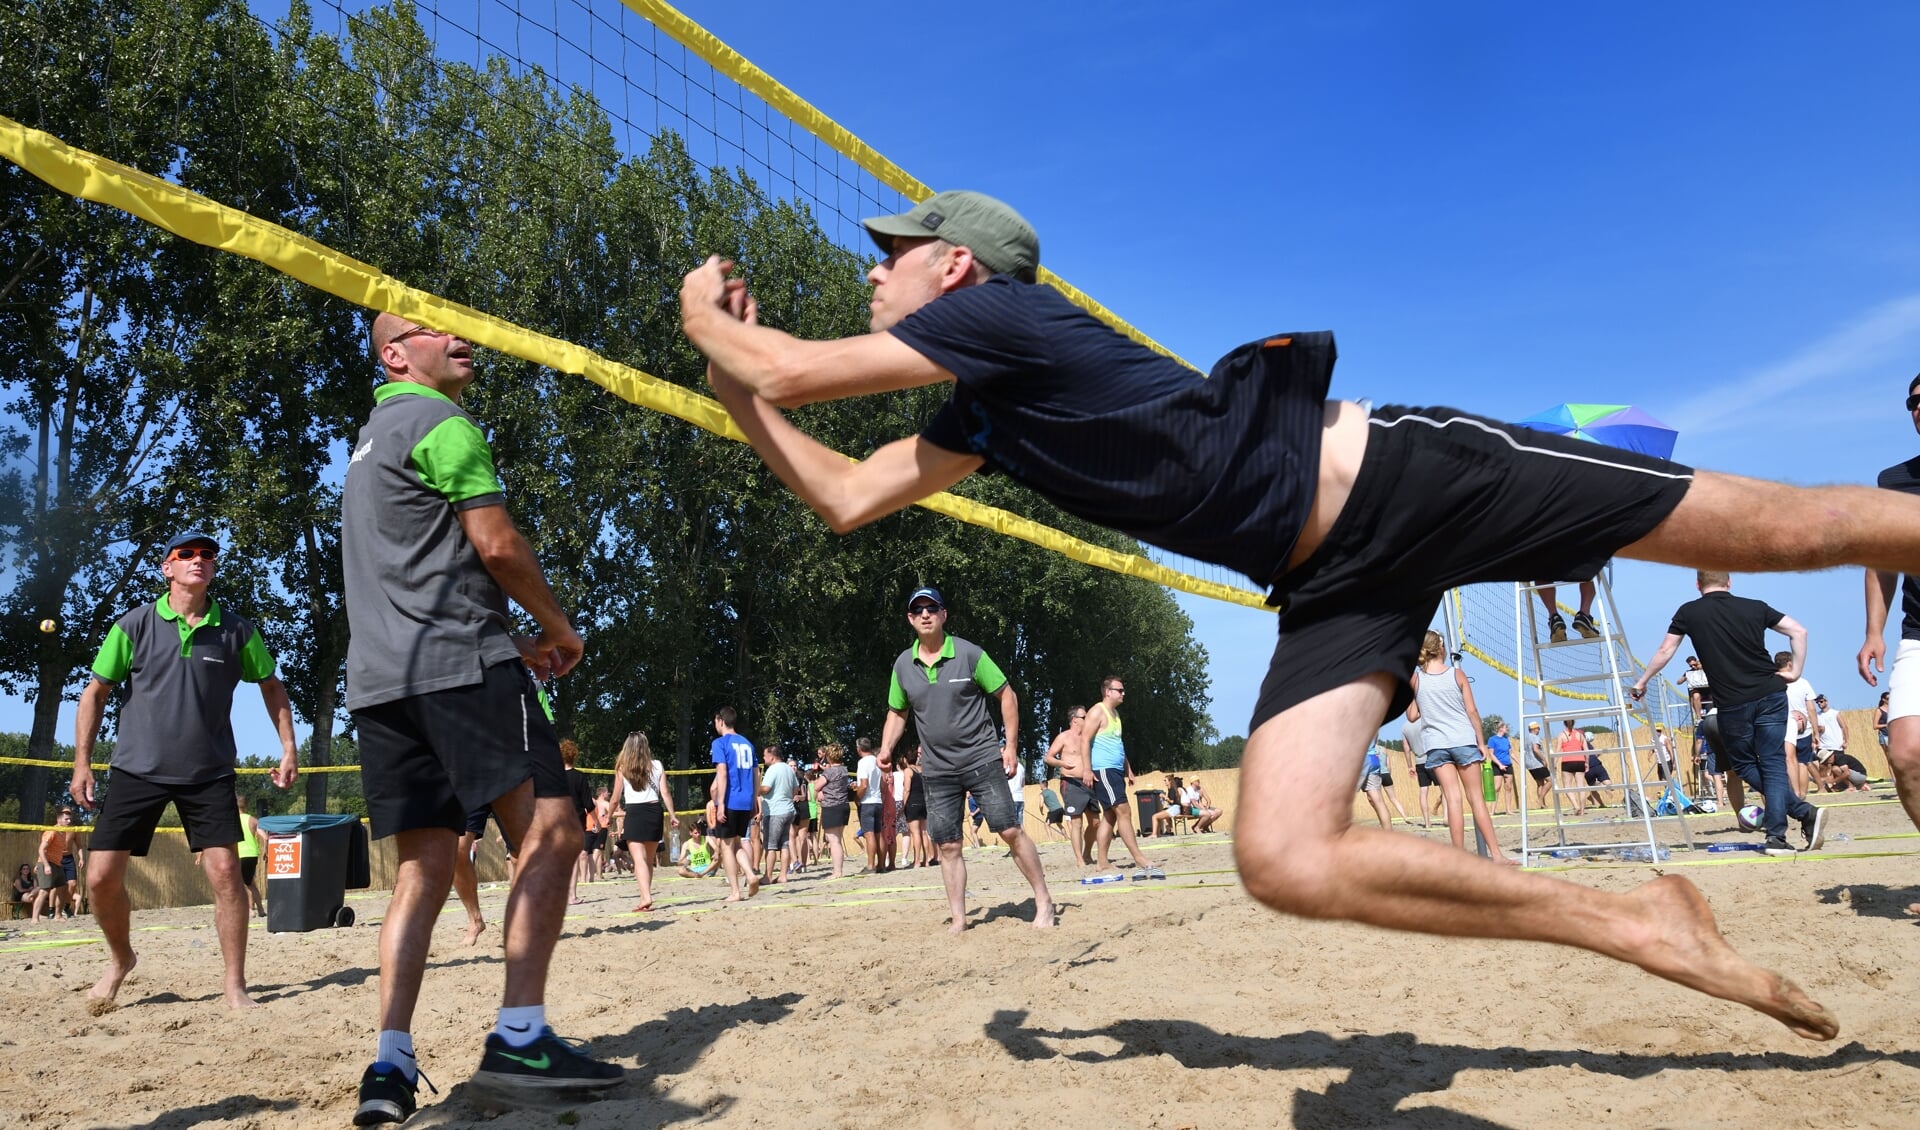 Sportieve acties tijdens Beach Event Son in 2019 (archieffoto)